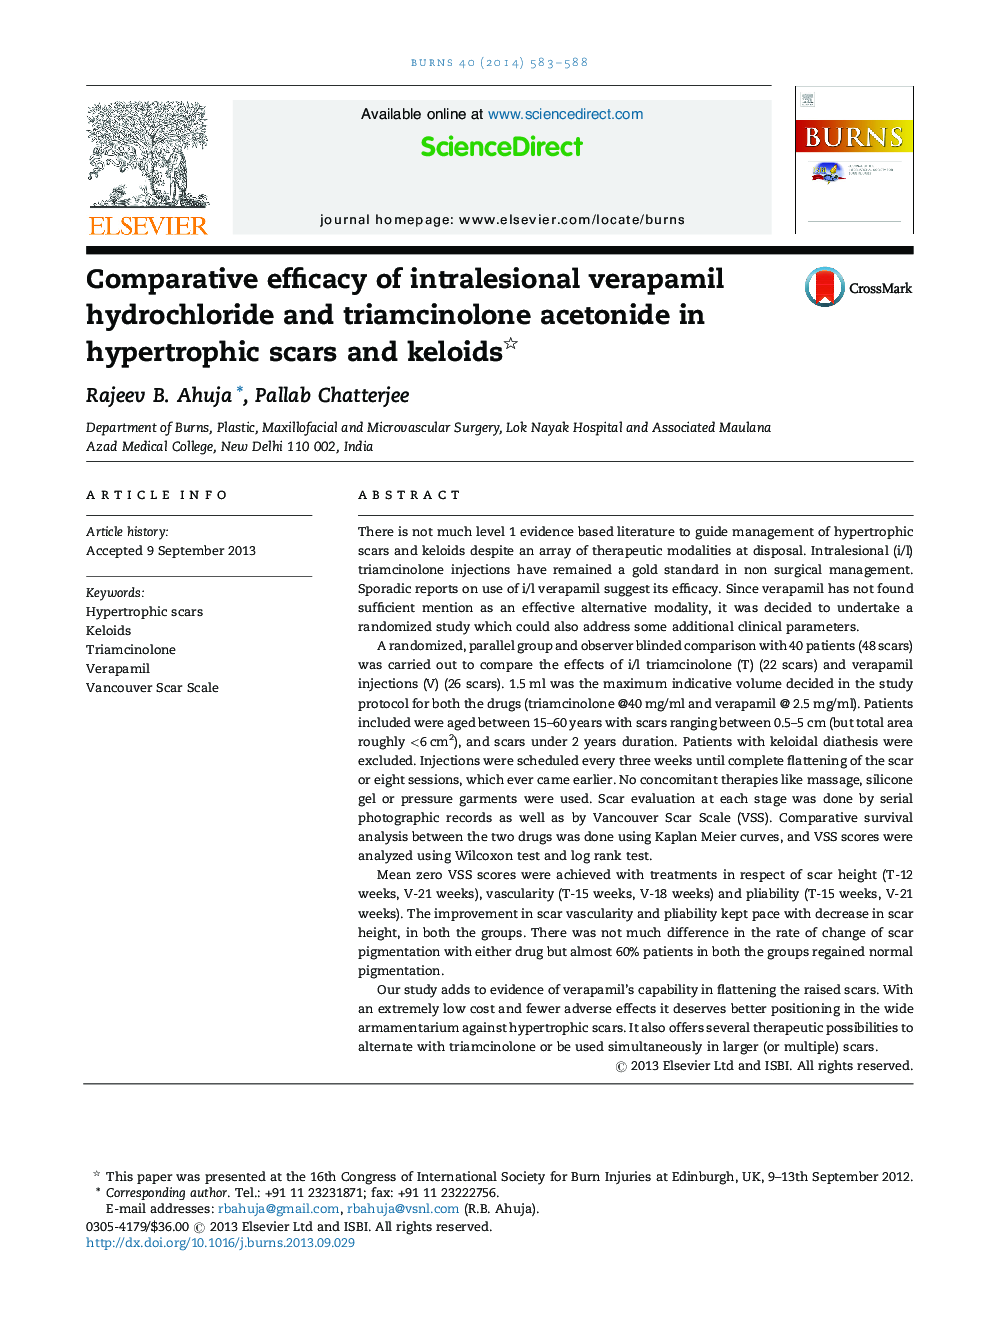 مقایسه اثربخشی وراپامیل هیدروکلرید داخل وریدی و تریامسینولون استونید در زخمهای هیپرتروفیک و کلوئید 